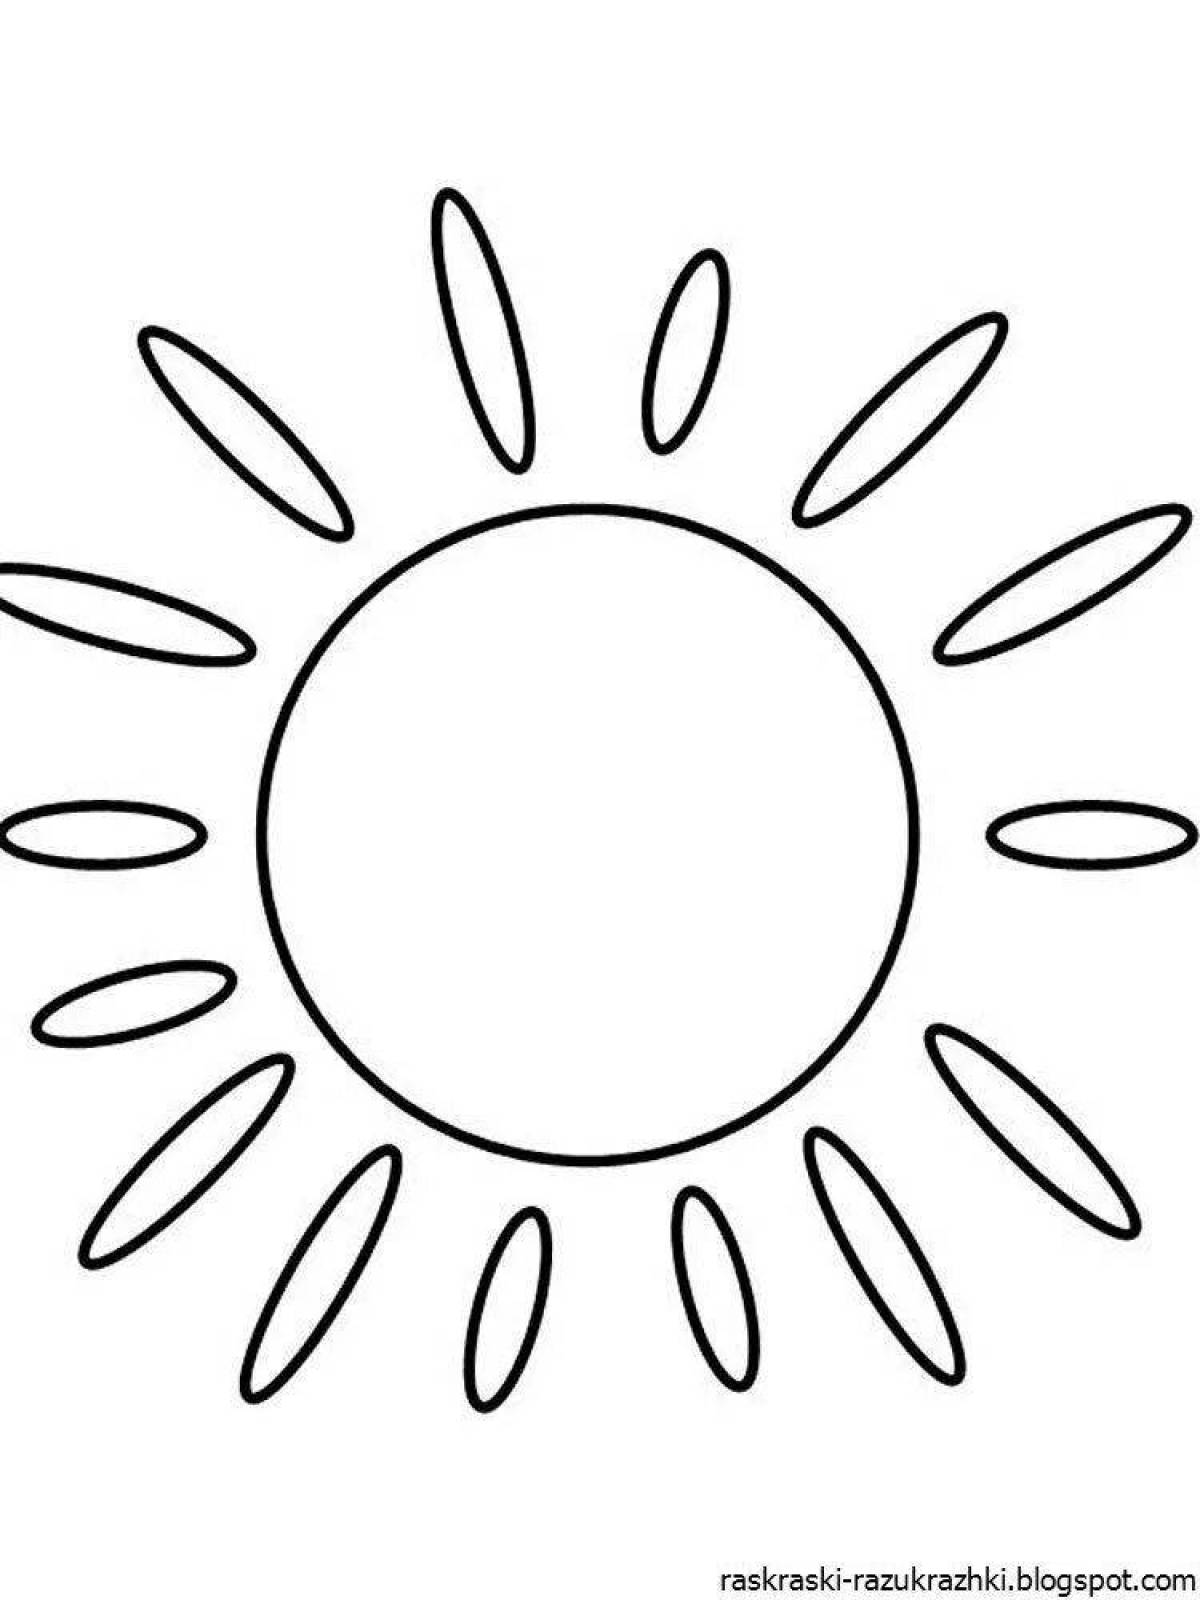 Гипнотическая раскраска солнечная картинка для детей